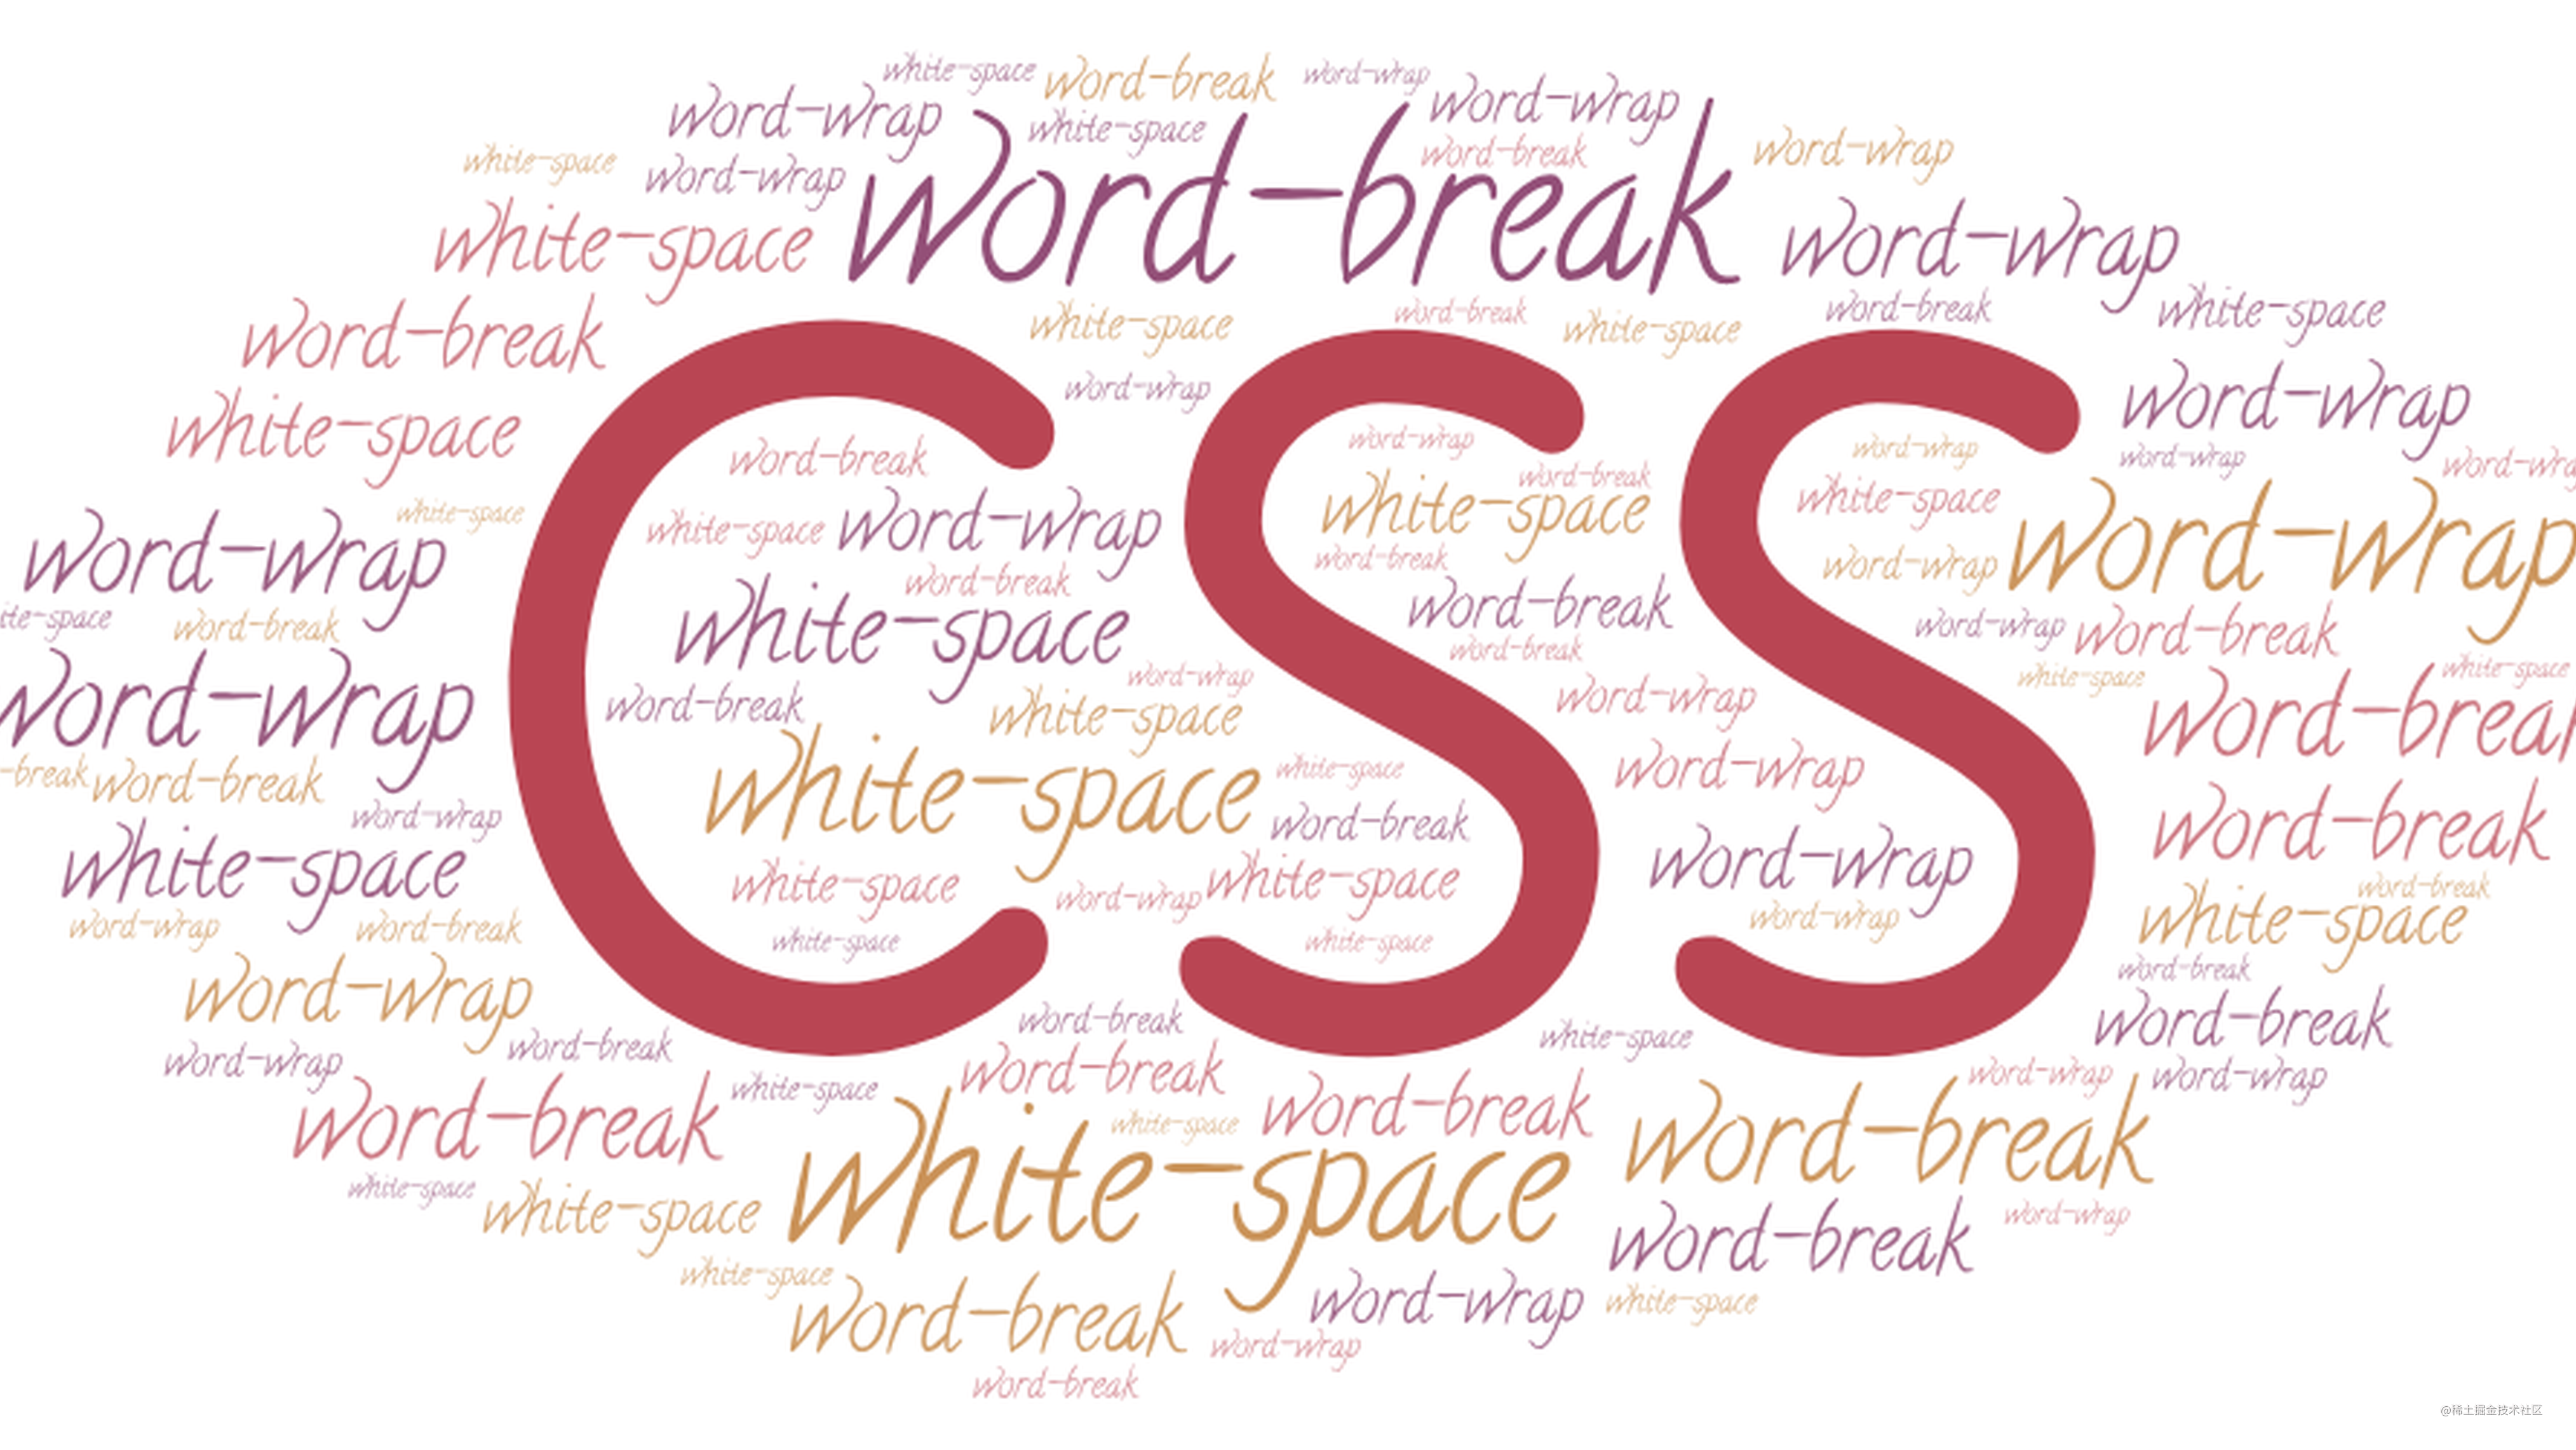 彻底搞懂word-break、word-wrap、white-space